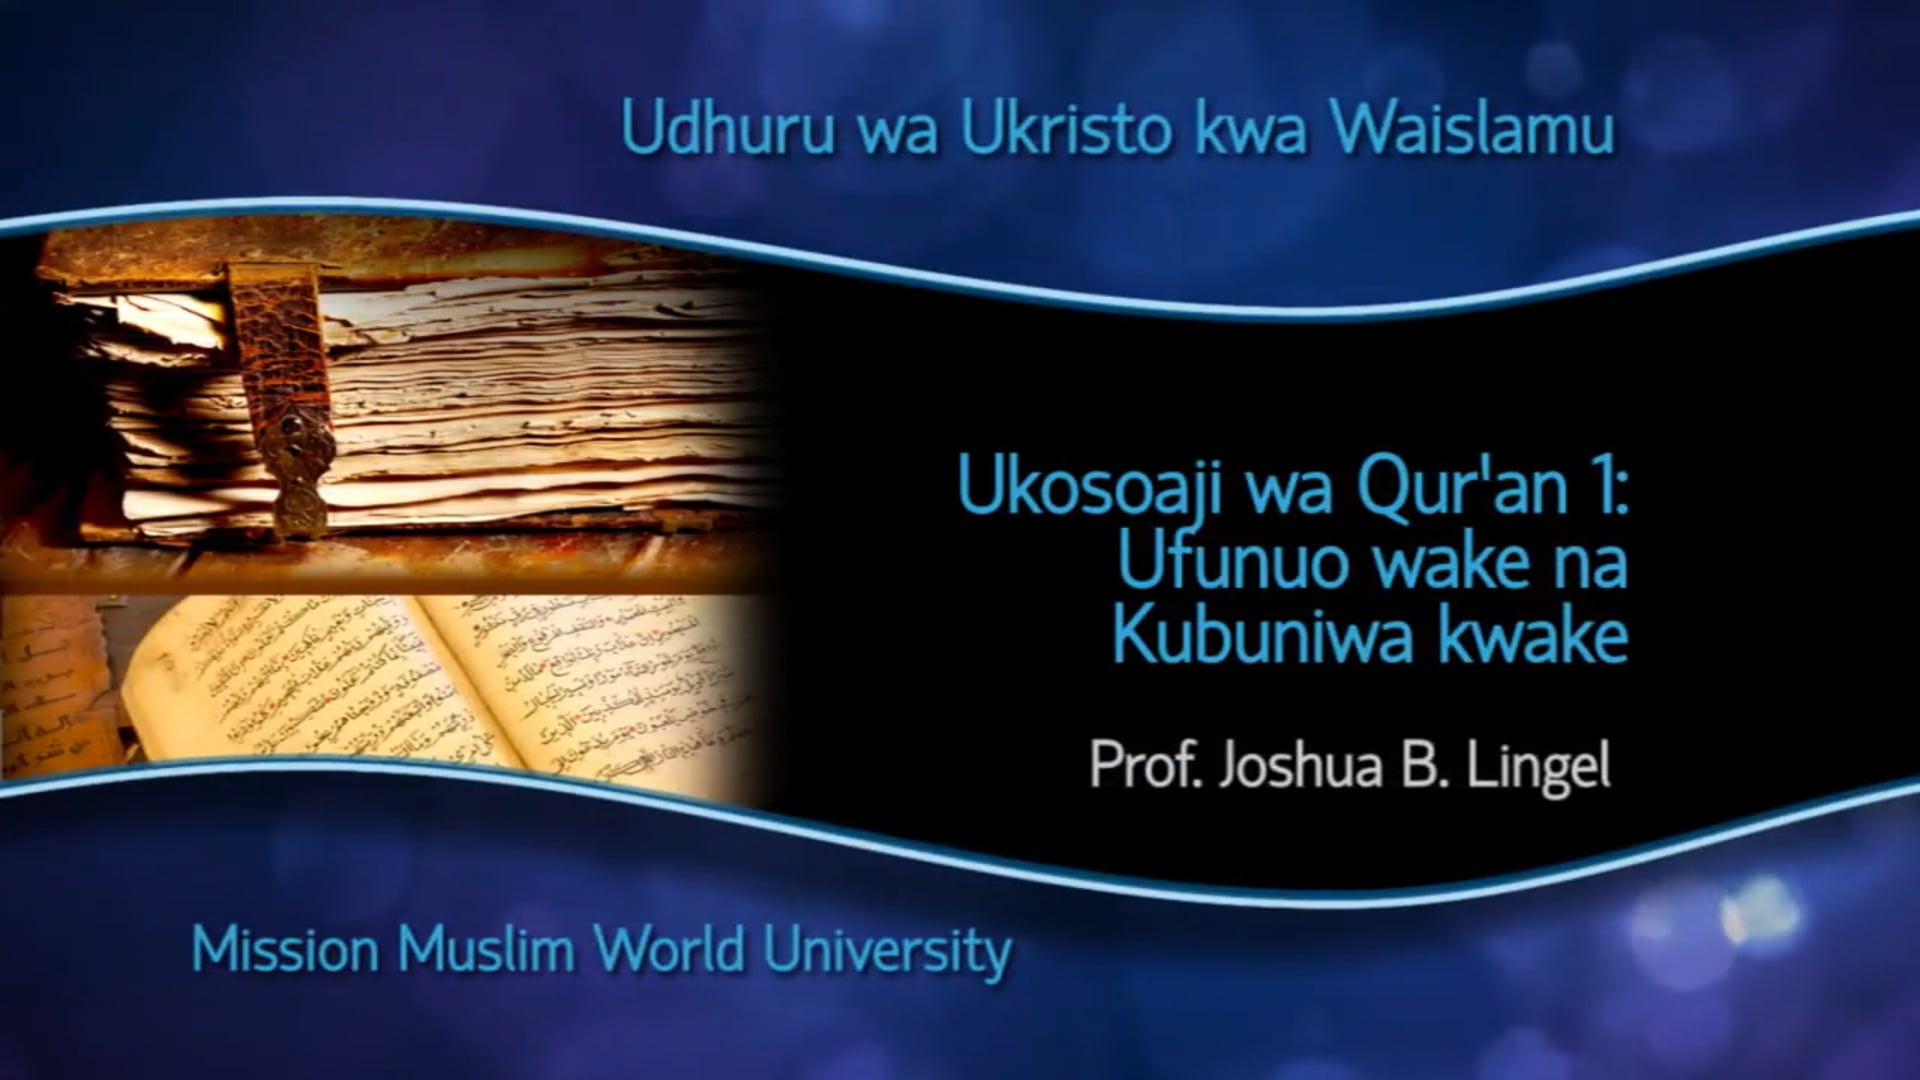 06 Ukosoaji wa Qur’an 1: Ufunuo wake na Kubuniwa kwake